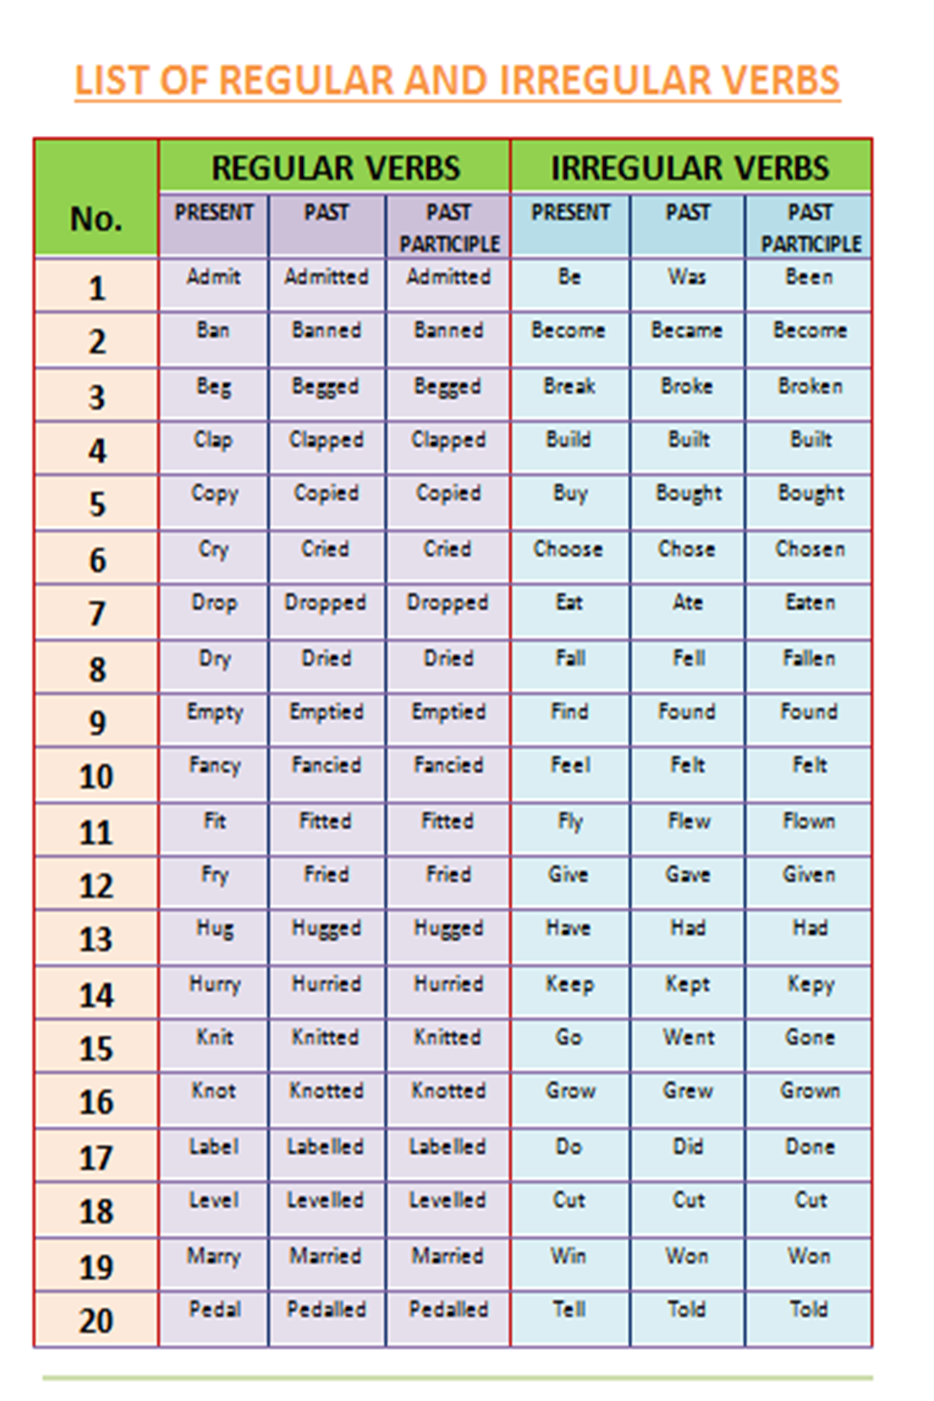 List Of Regular Irregular Verbs Fff